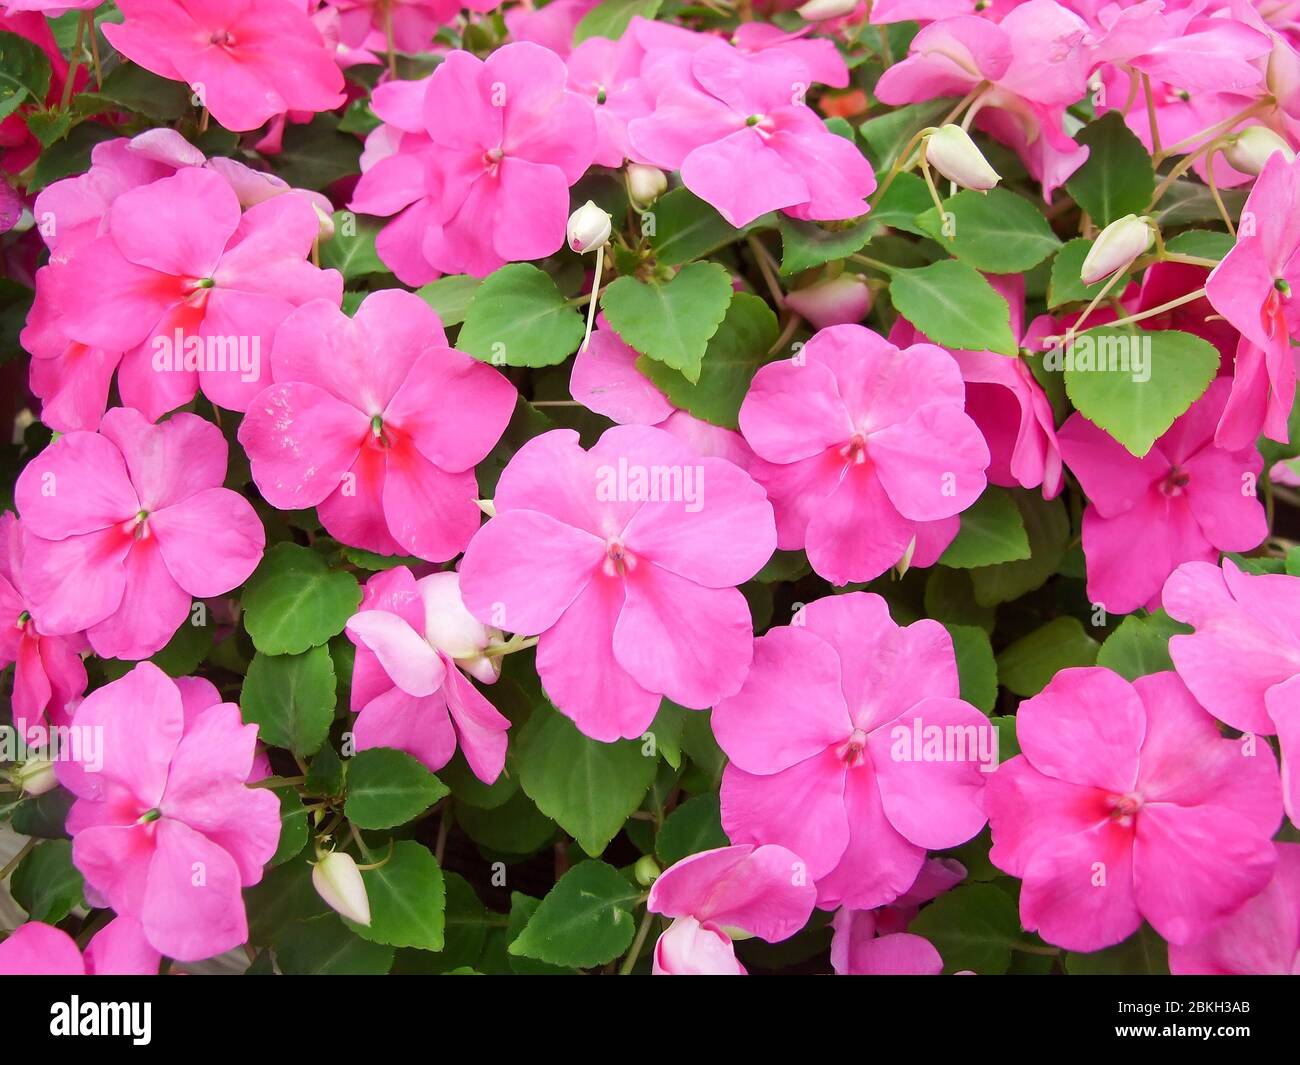 Impatiens rosa, nome scientifico Impatiens walleriana fiori anche chiamato Balsam, aiuole di fiori in rosa Foto Stock